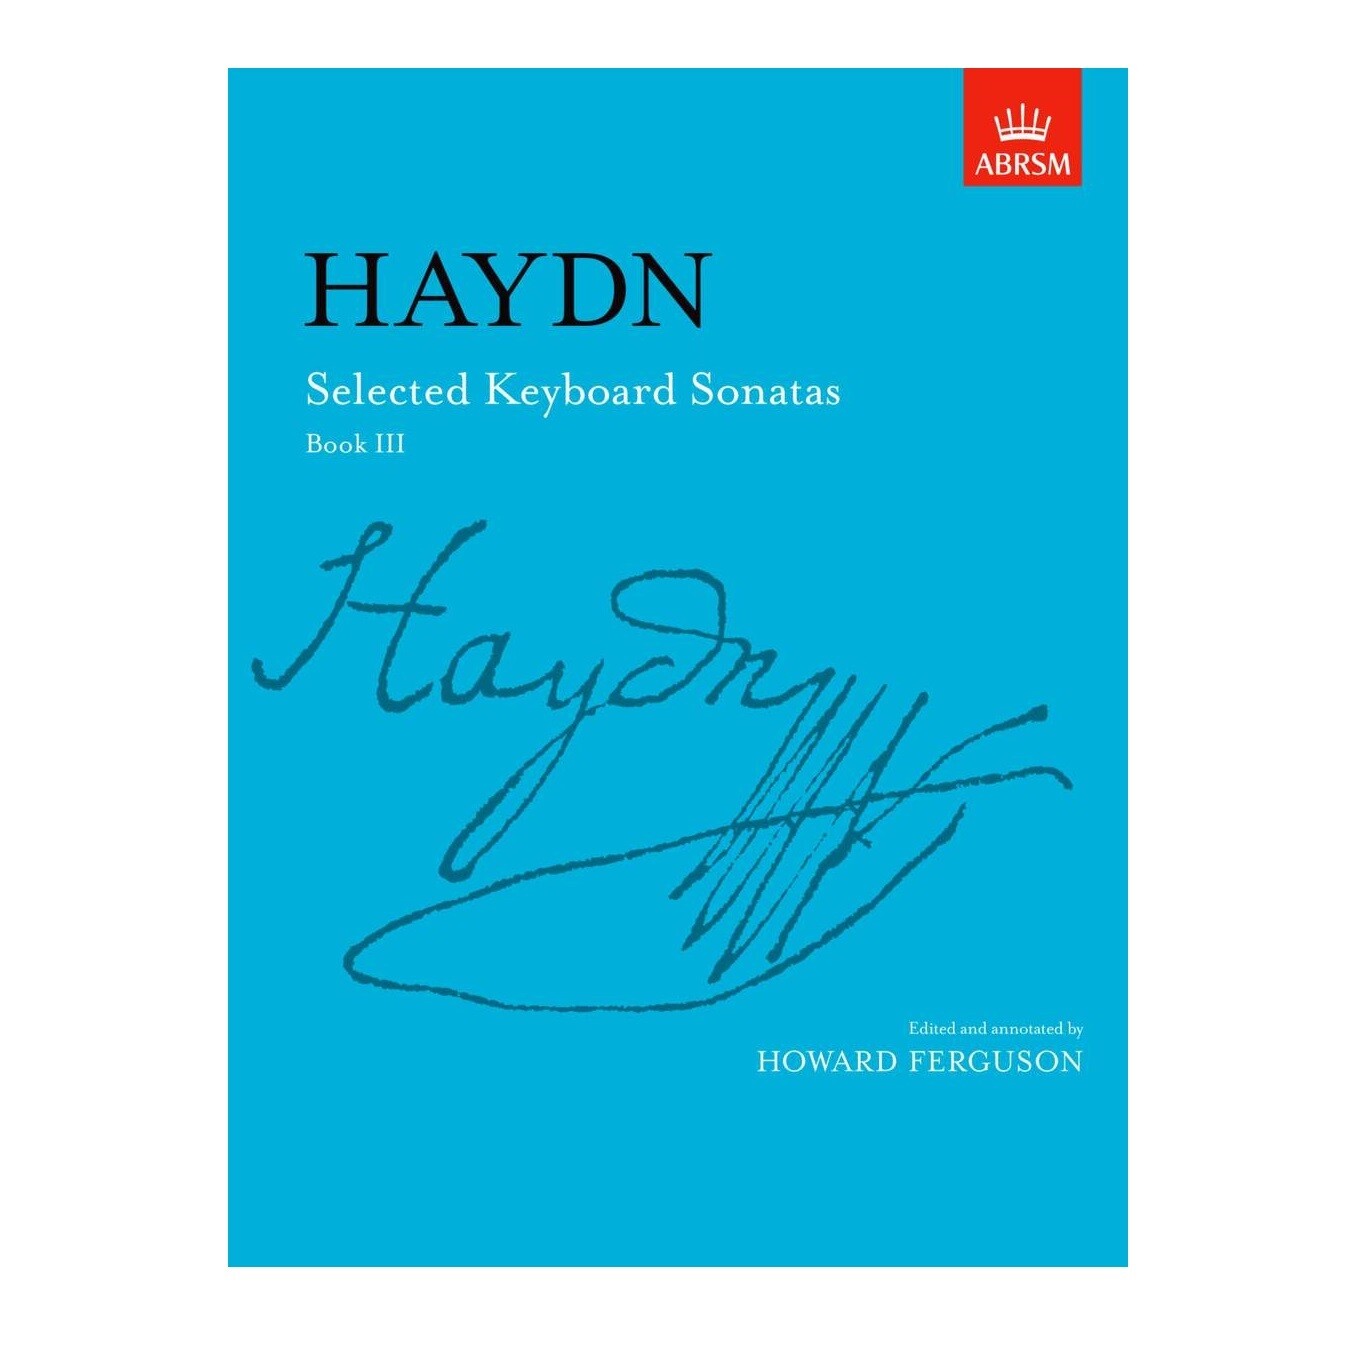 Haydn: Selected Keyboard Sonatas - Book III